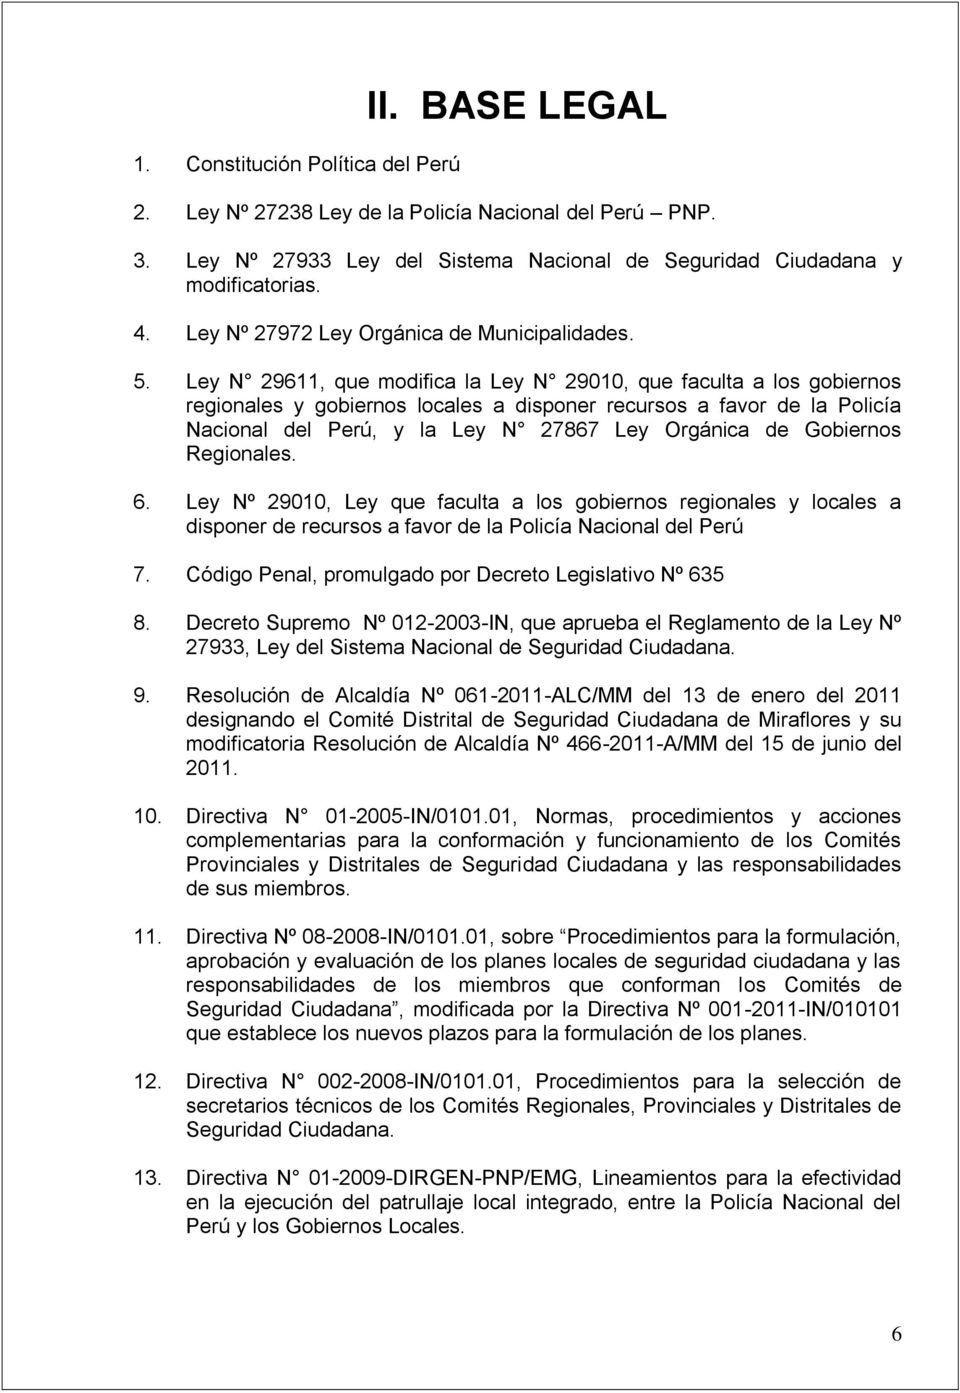 Ley N 29611, que modifica la Ley N 29010, que faculta a los gobiernos regionales y gobiernos locales a disponer recursos a favor de la Policía Nacional del Perú, y la Ley N 27867 Ley Orgánica de